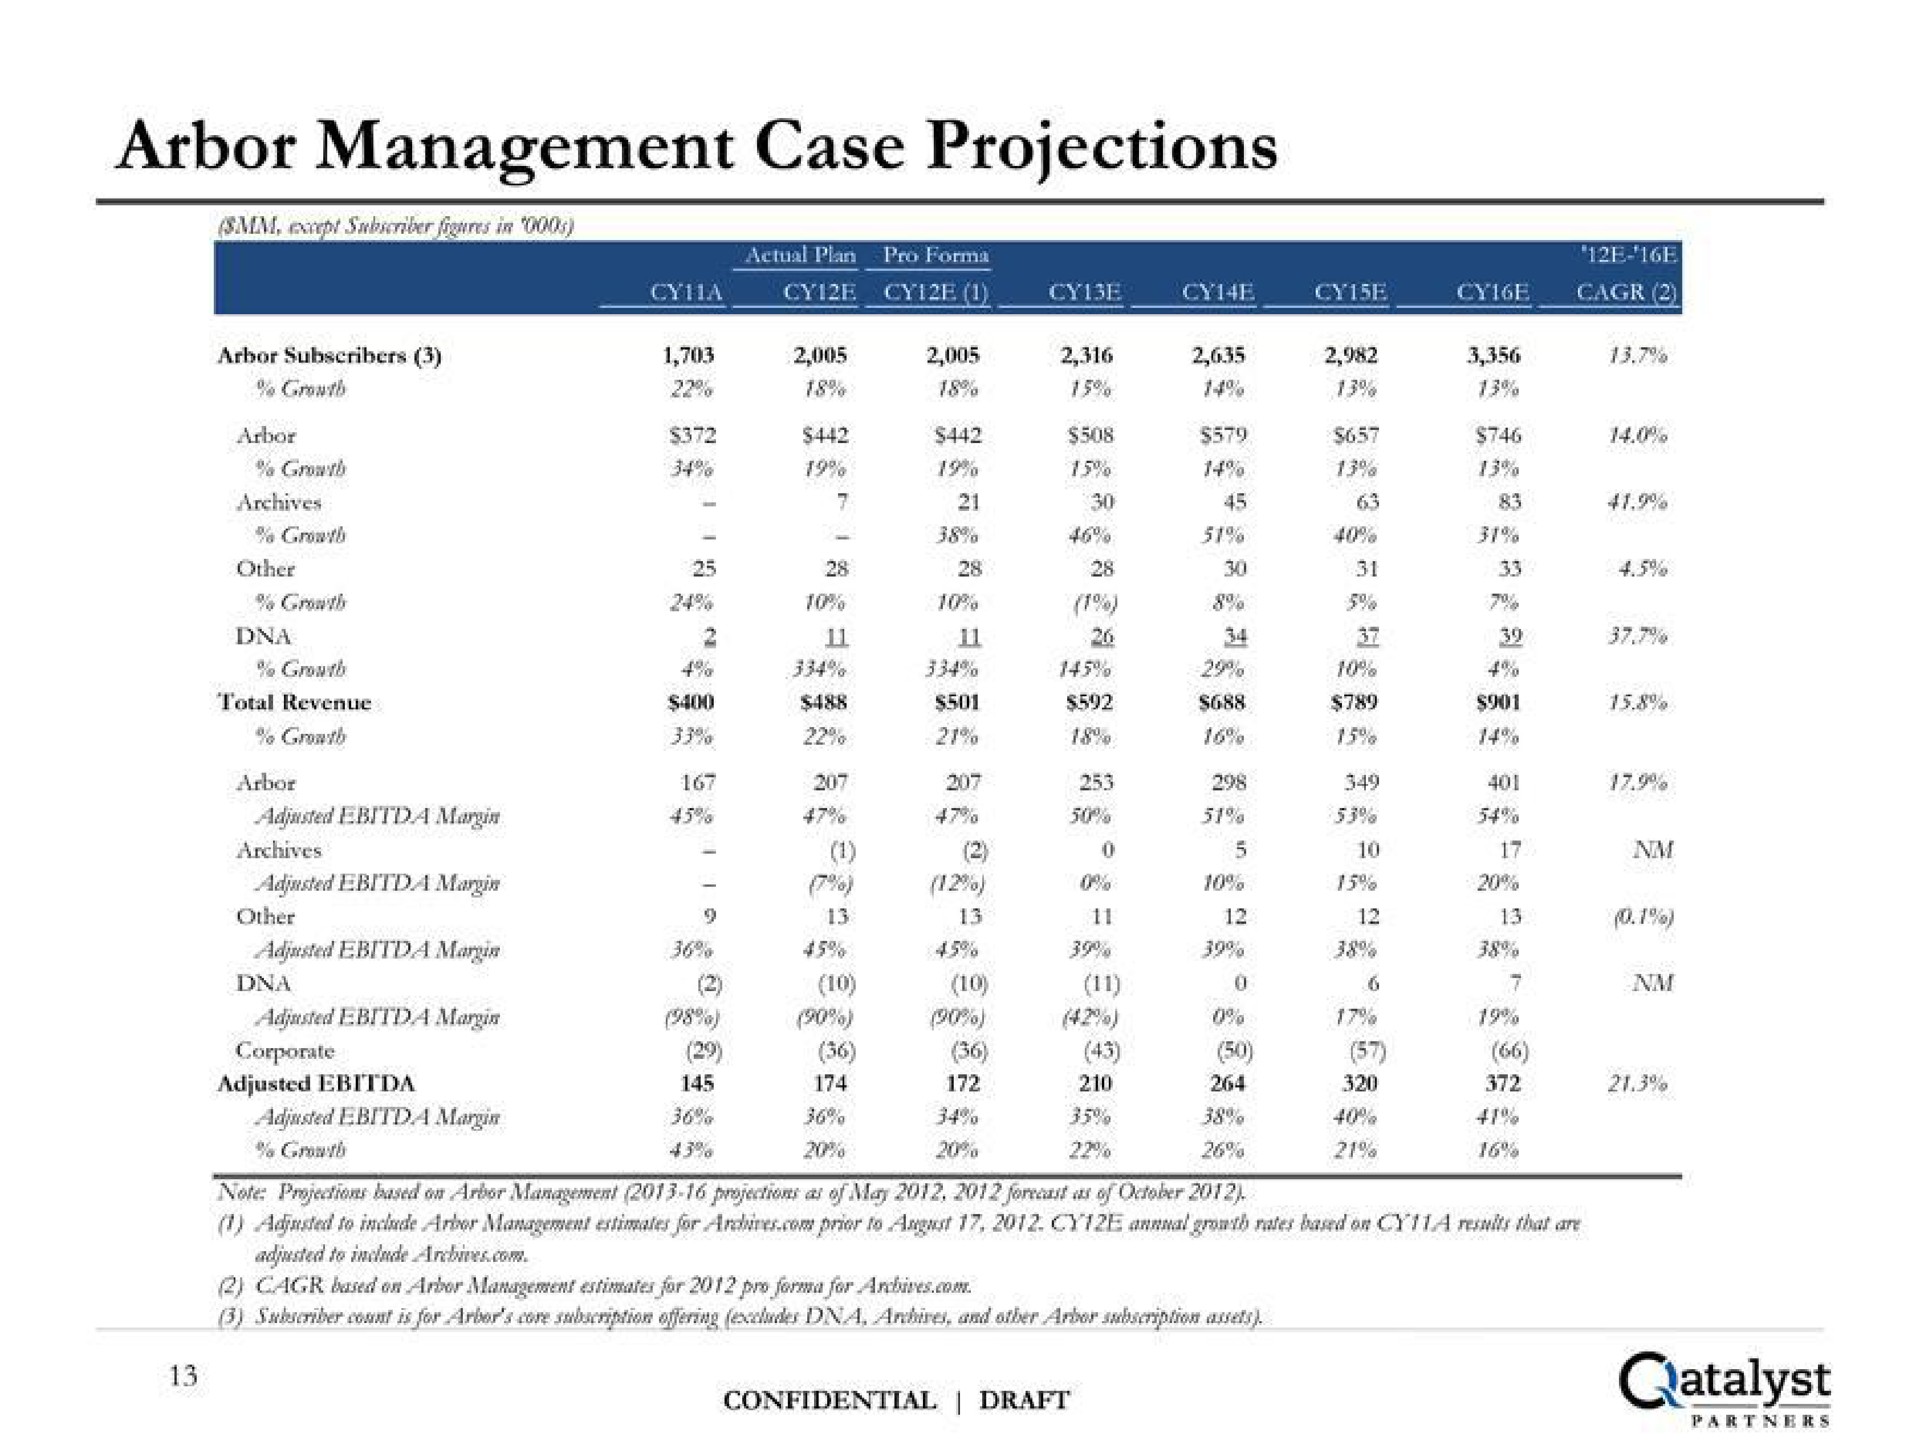 arbor management case projections | Qatalyst Partners